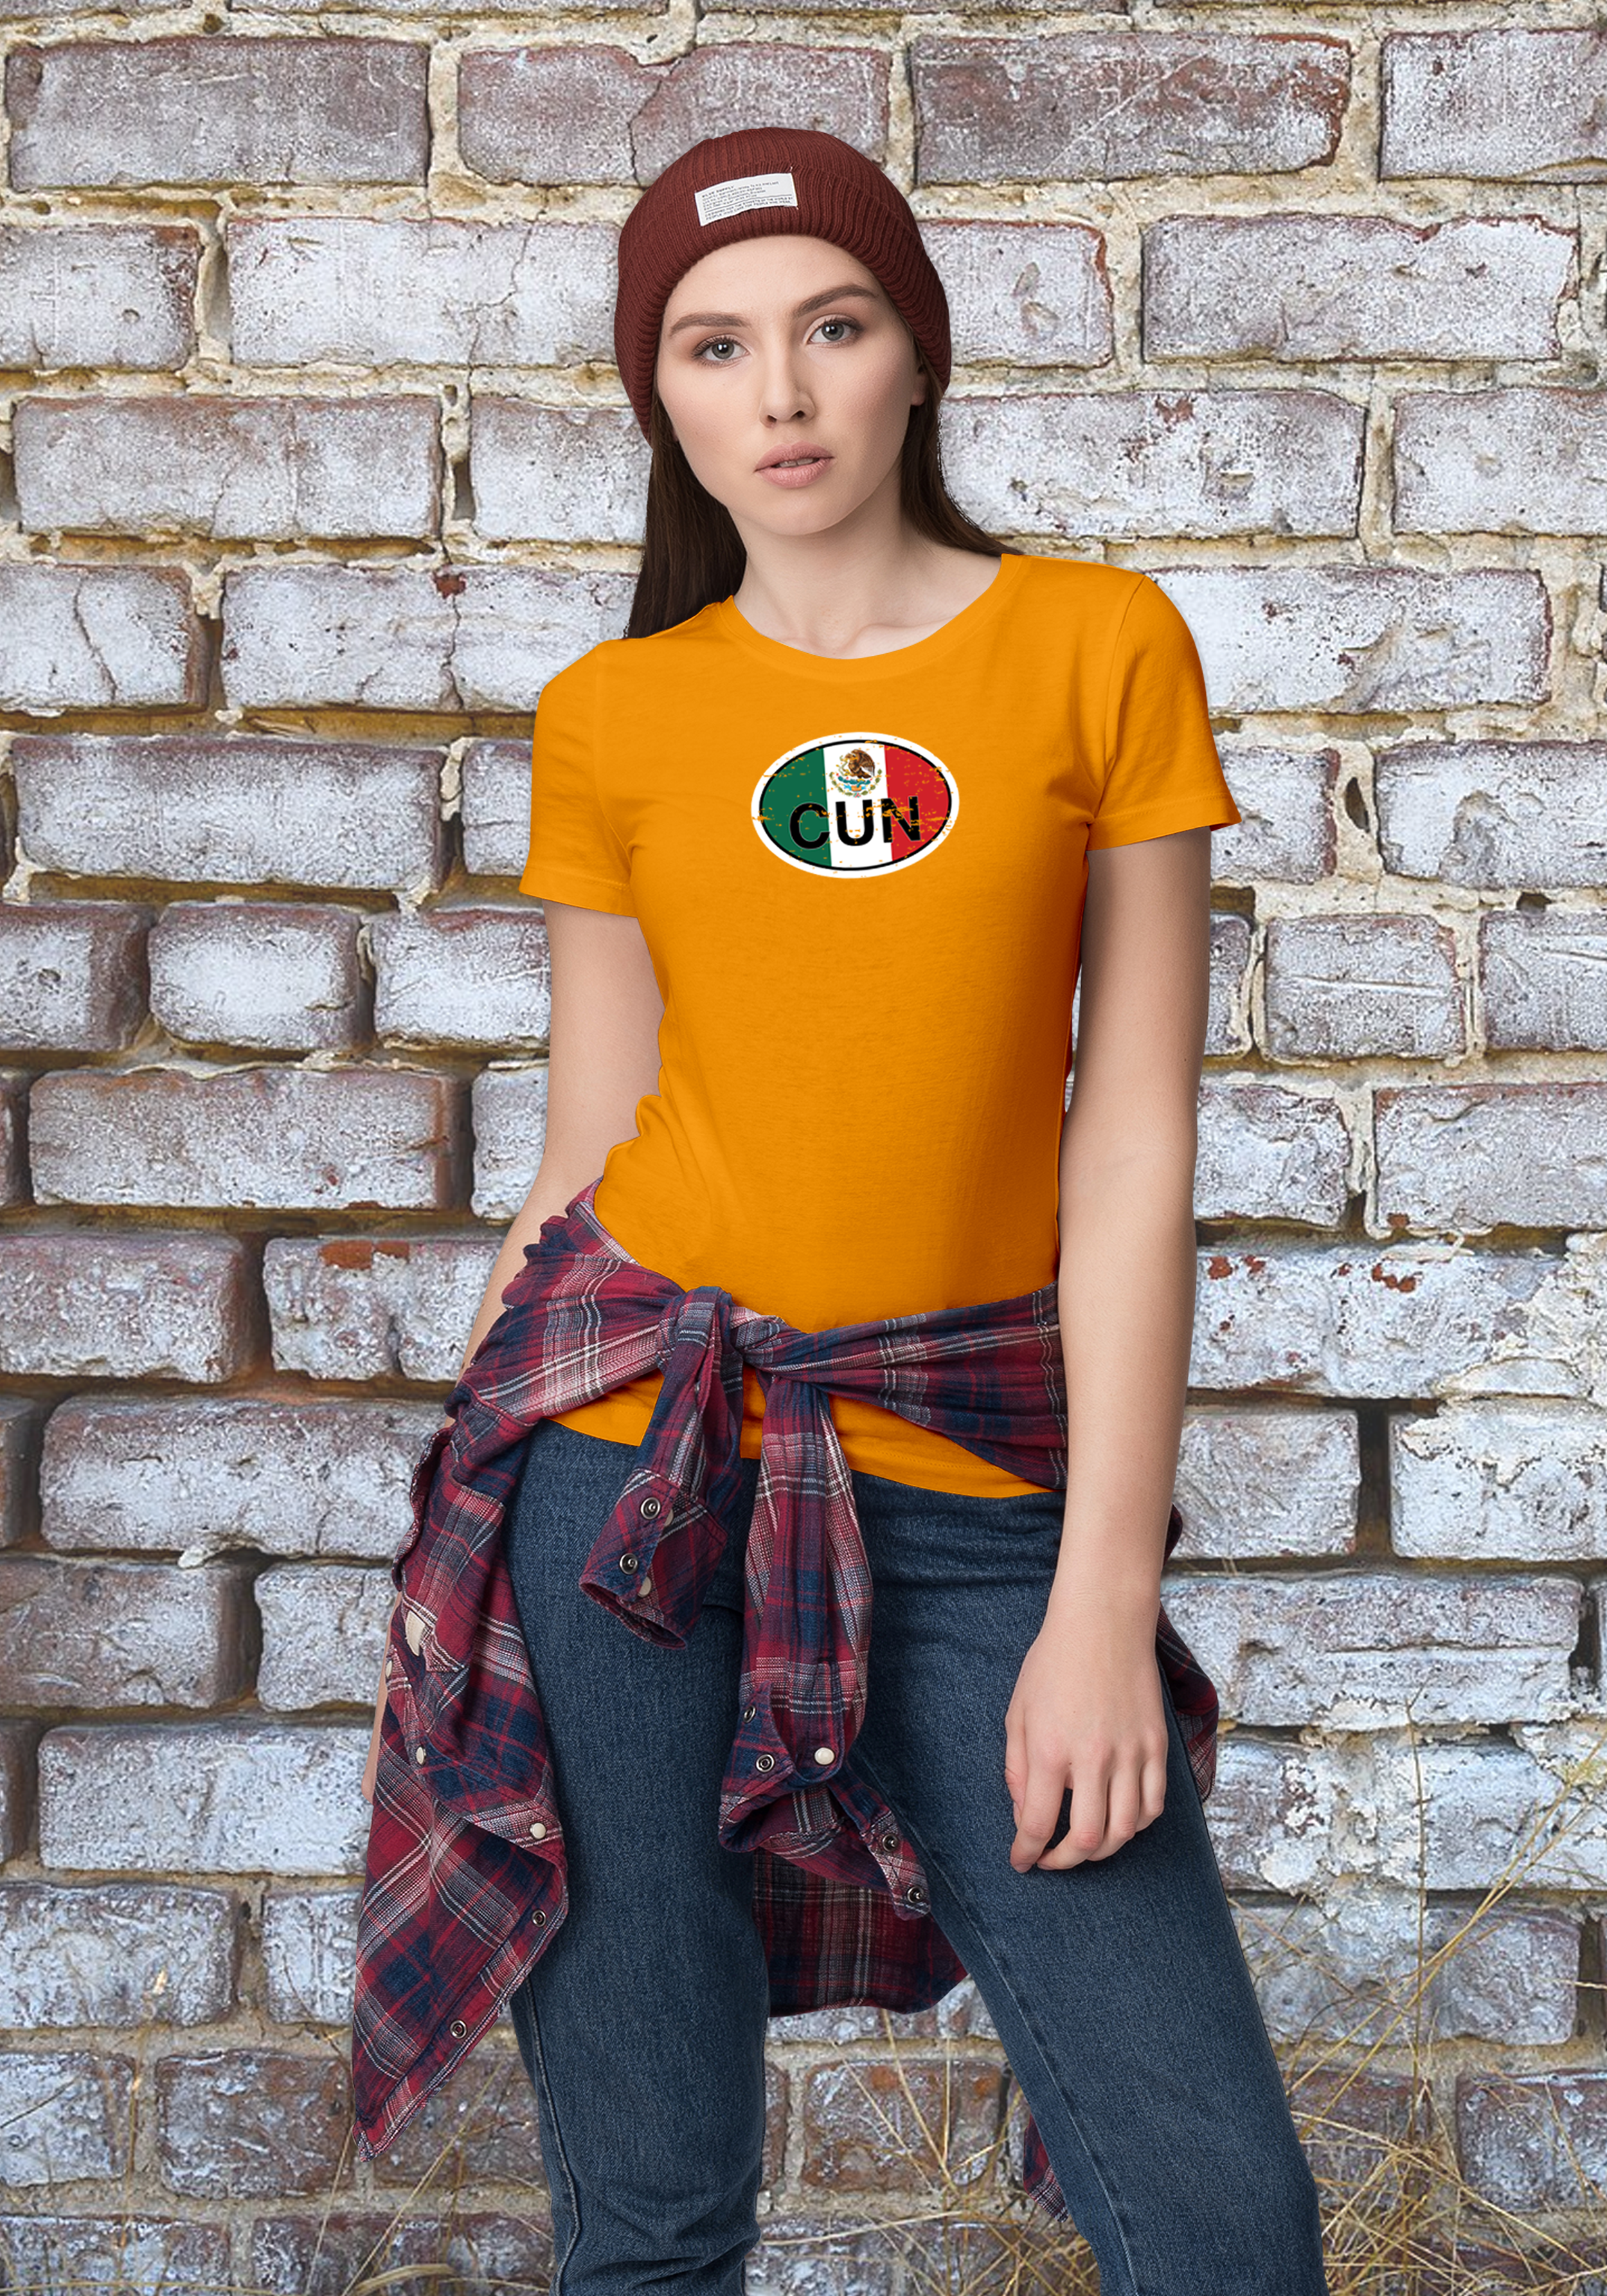 Cancun Women's Flag T-Shirt Souvenirs - My Destination Location